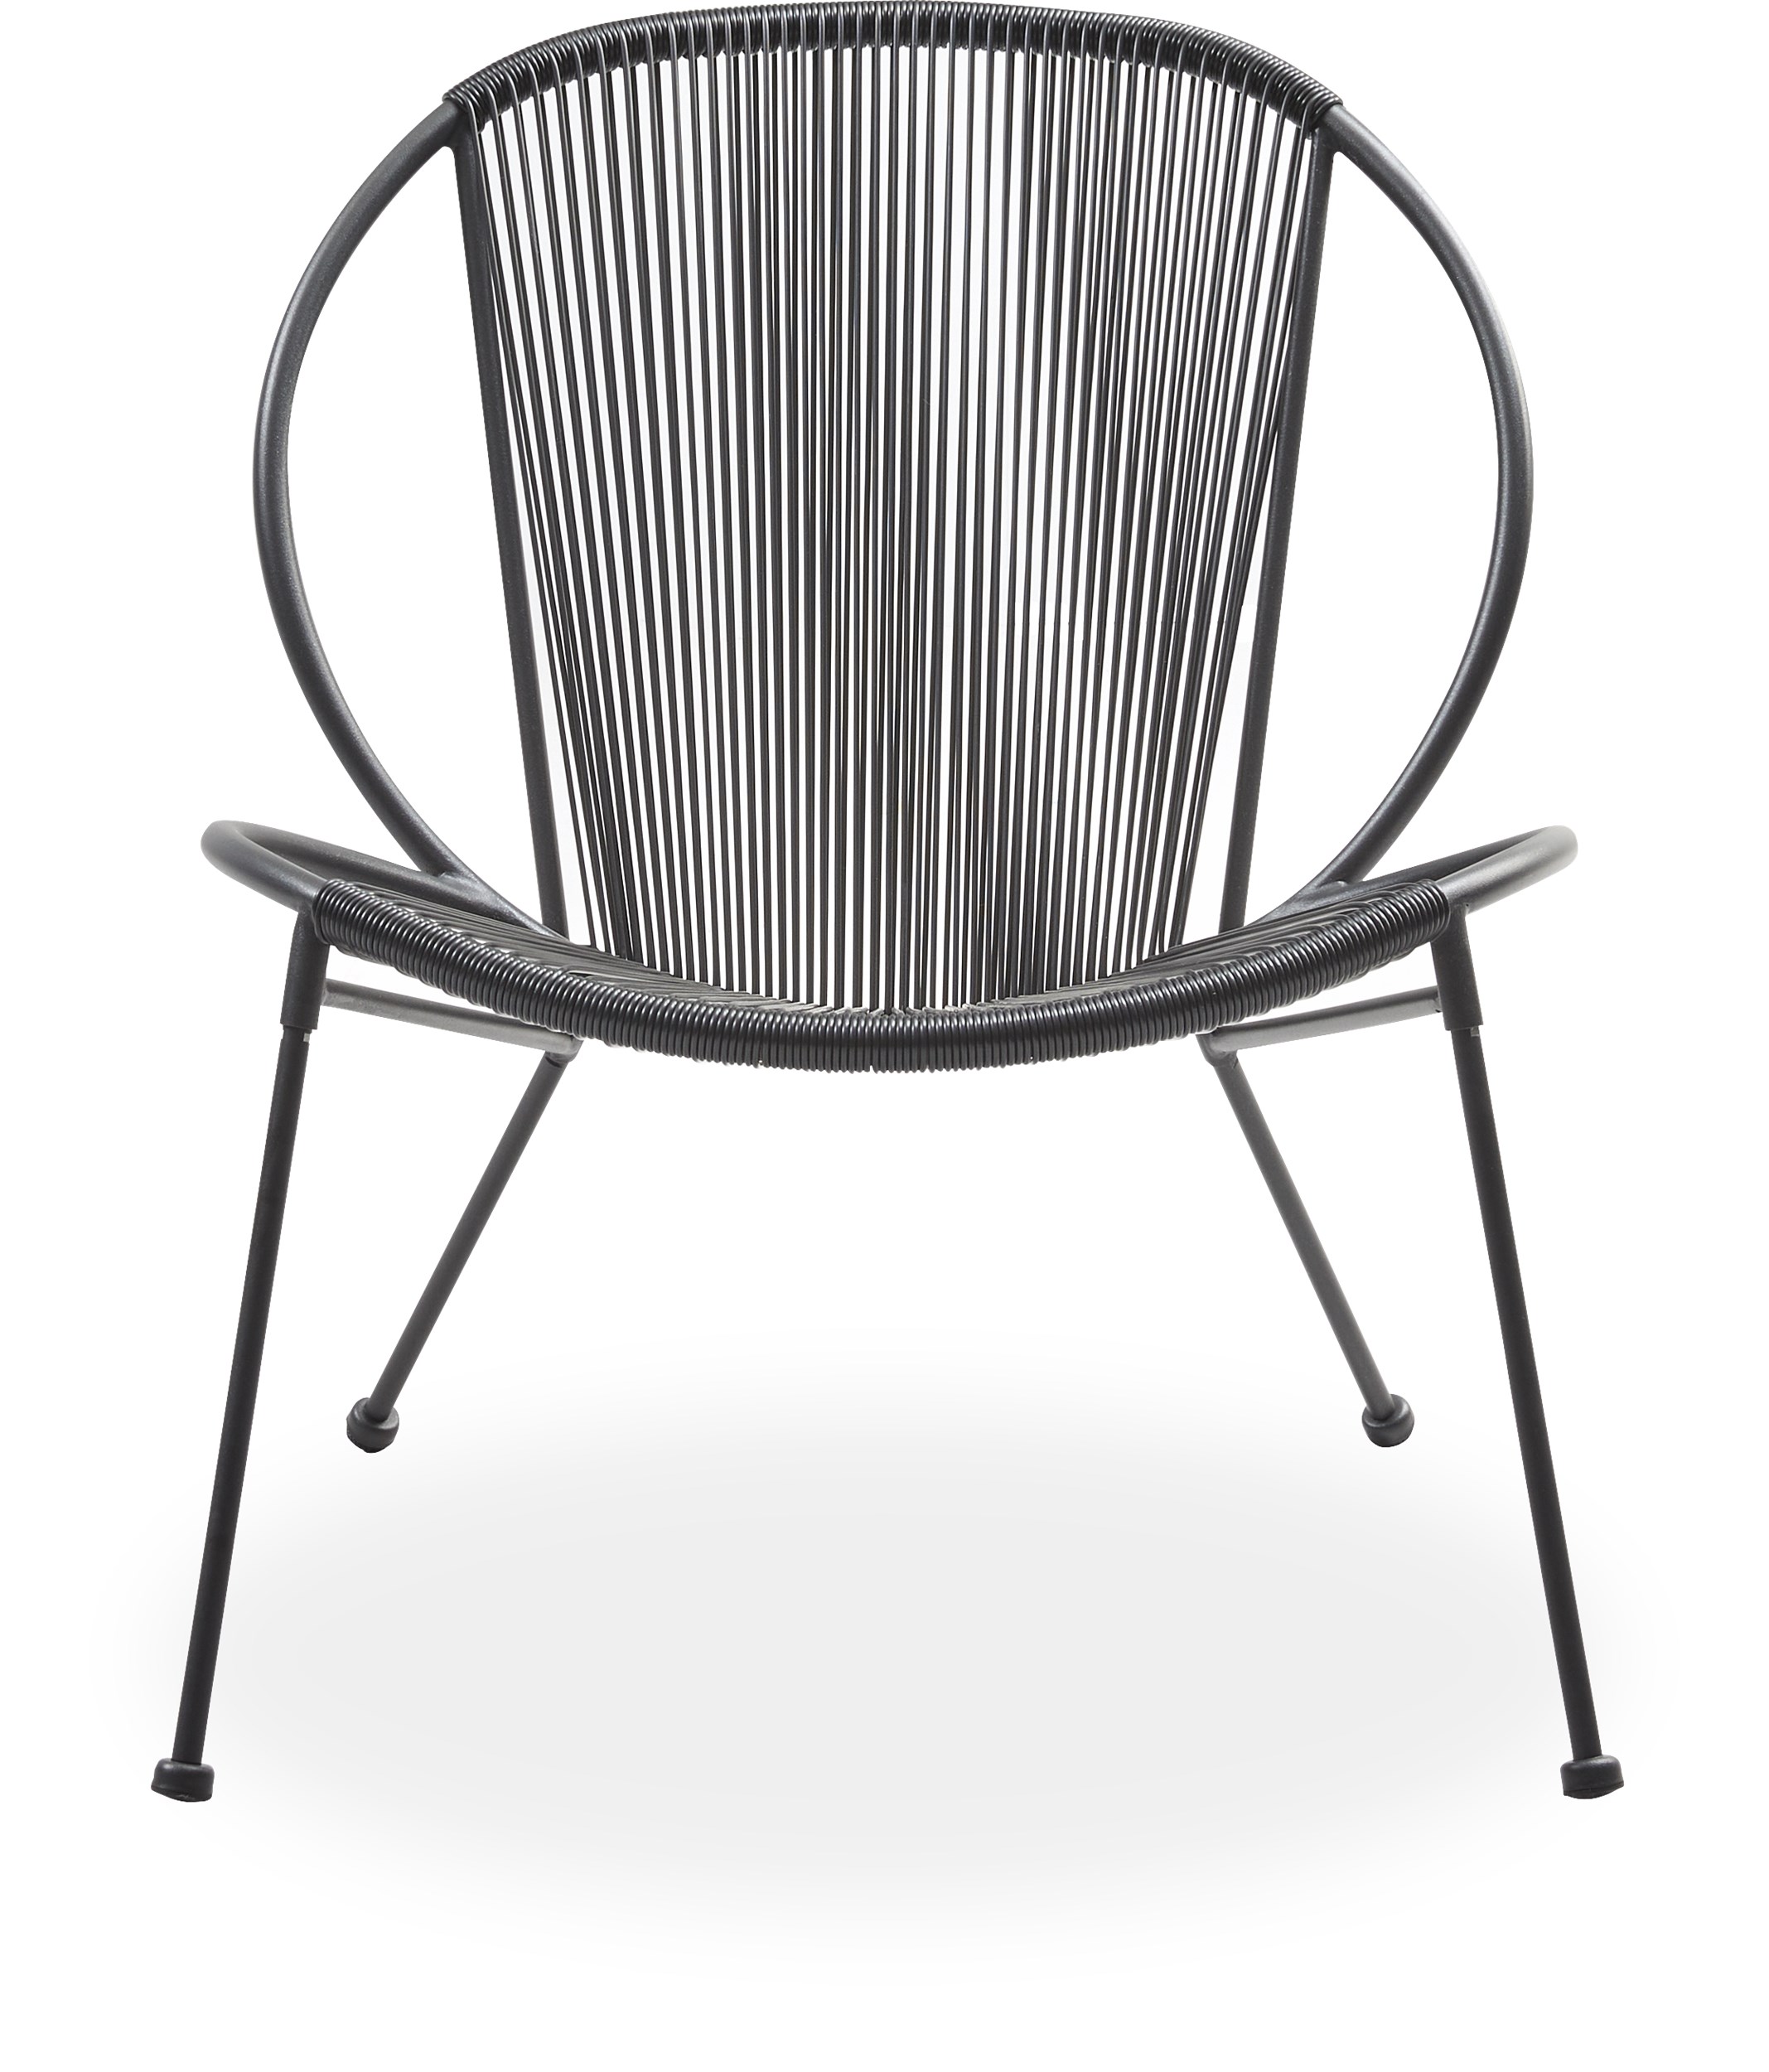 Milana Lounge trädgårdsstol - Sits/rygg i svart plast och stomme i svart pulverlackerad metall